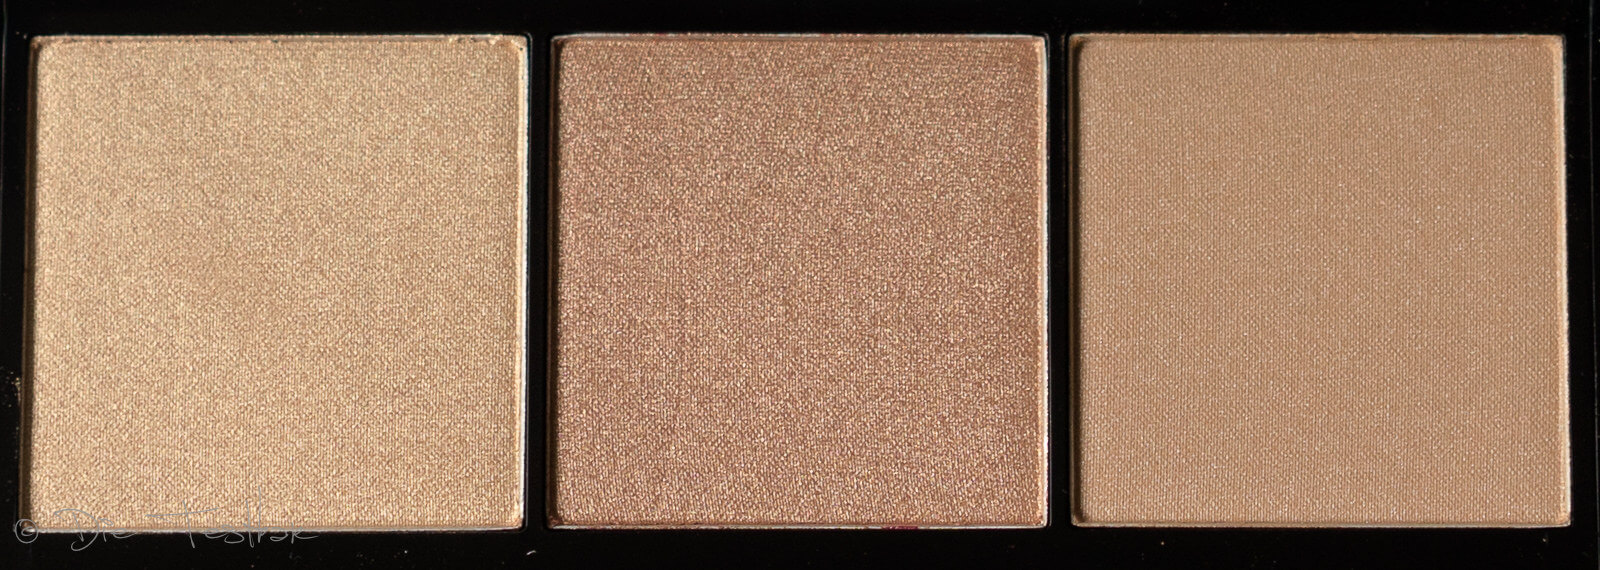 Face-, Bronze-, Blush- und Glow Paletten von Artdeco 67